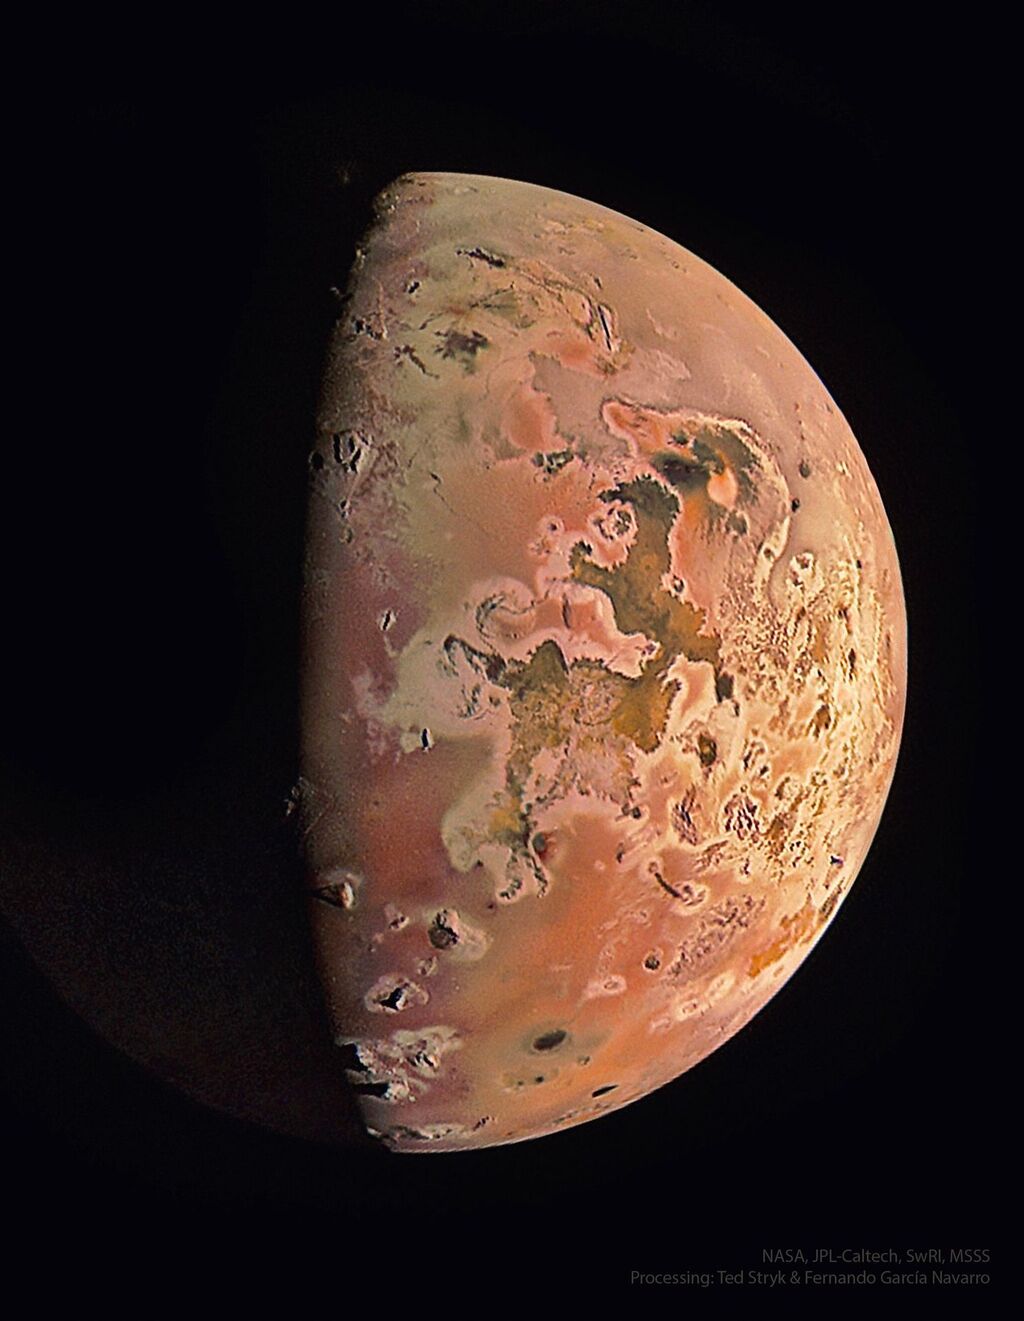 Superfície marmorizada laranja da lua Io contra o fundo preto do espaço